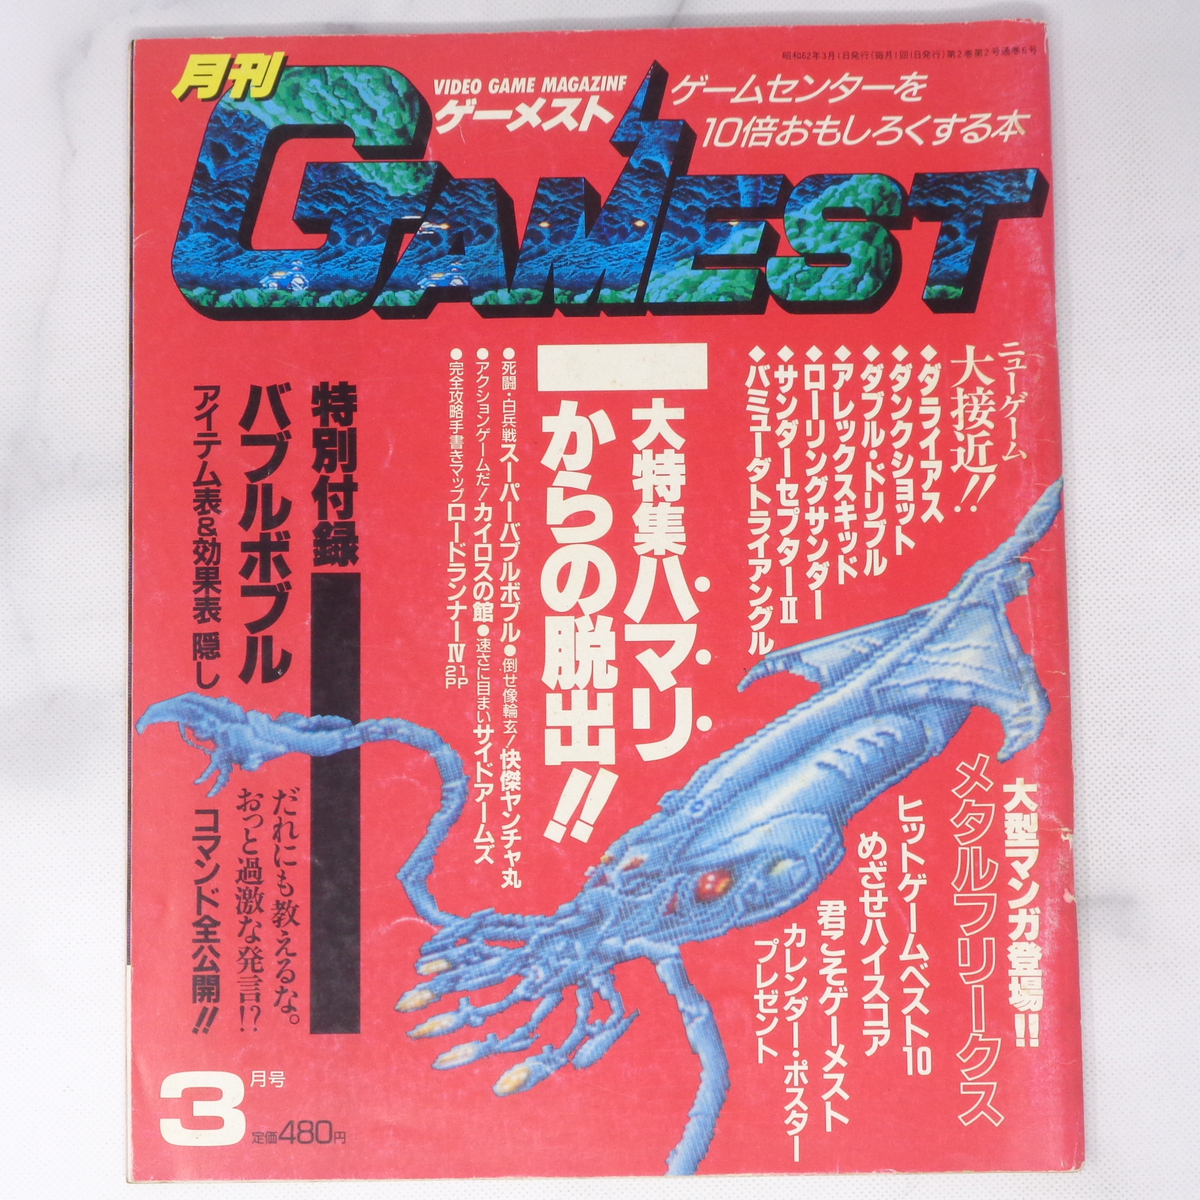 月刊GAMEST ゲーメスト 1987年3月号No.6 /大特集ハマリからの脱出/ダライアス/特別付録バブルボブル/ゲーム雑誌[Free Shipping]